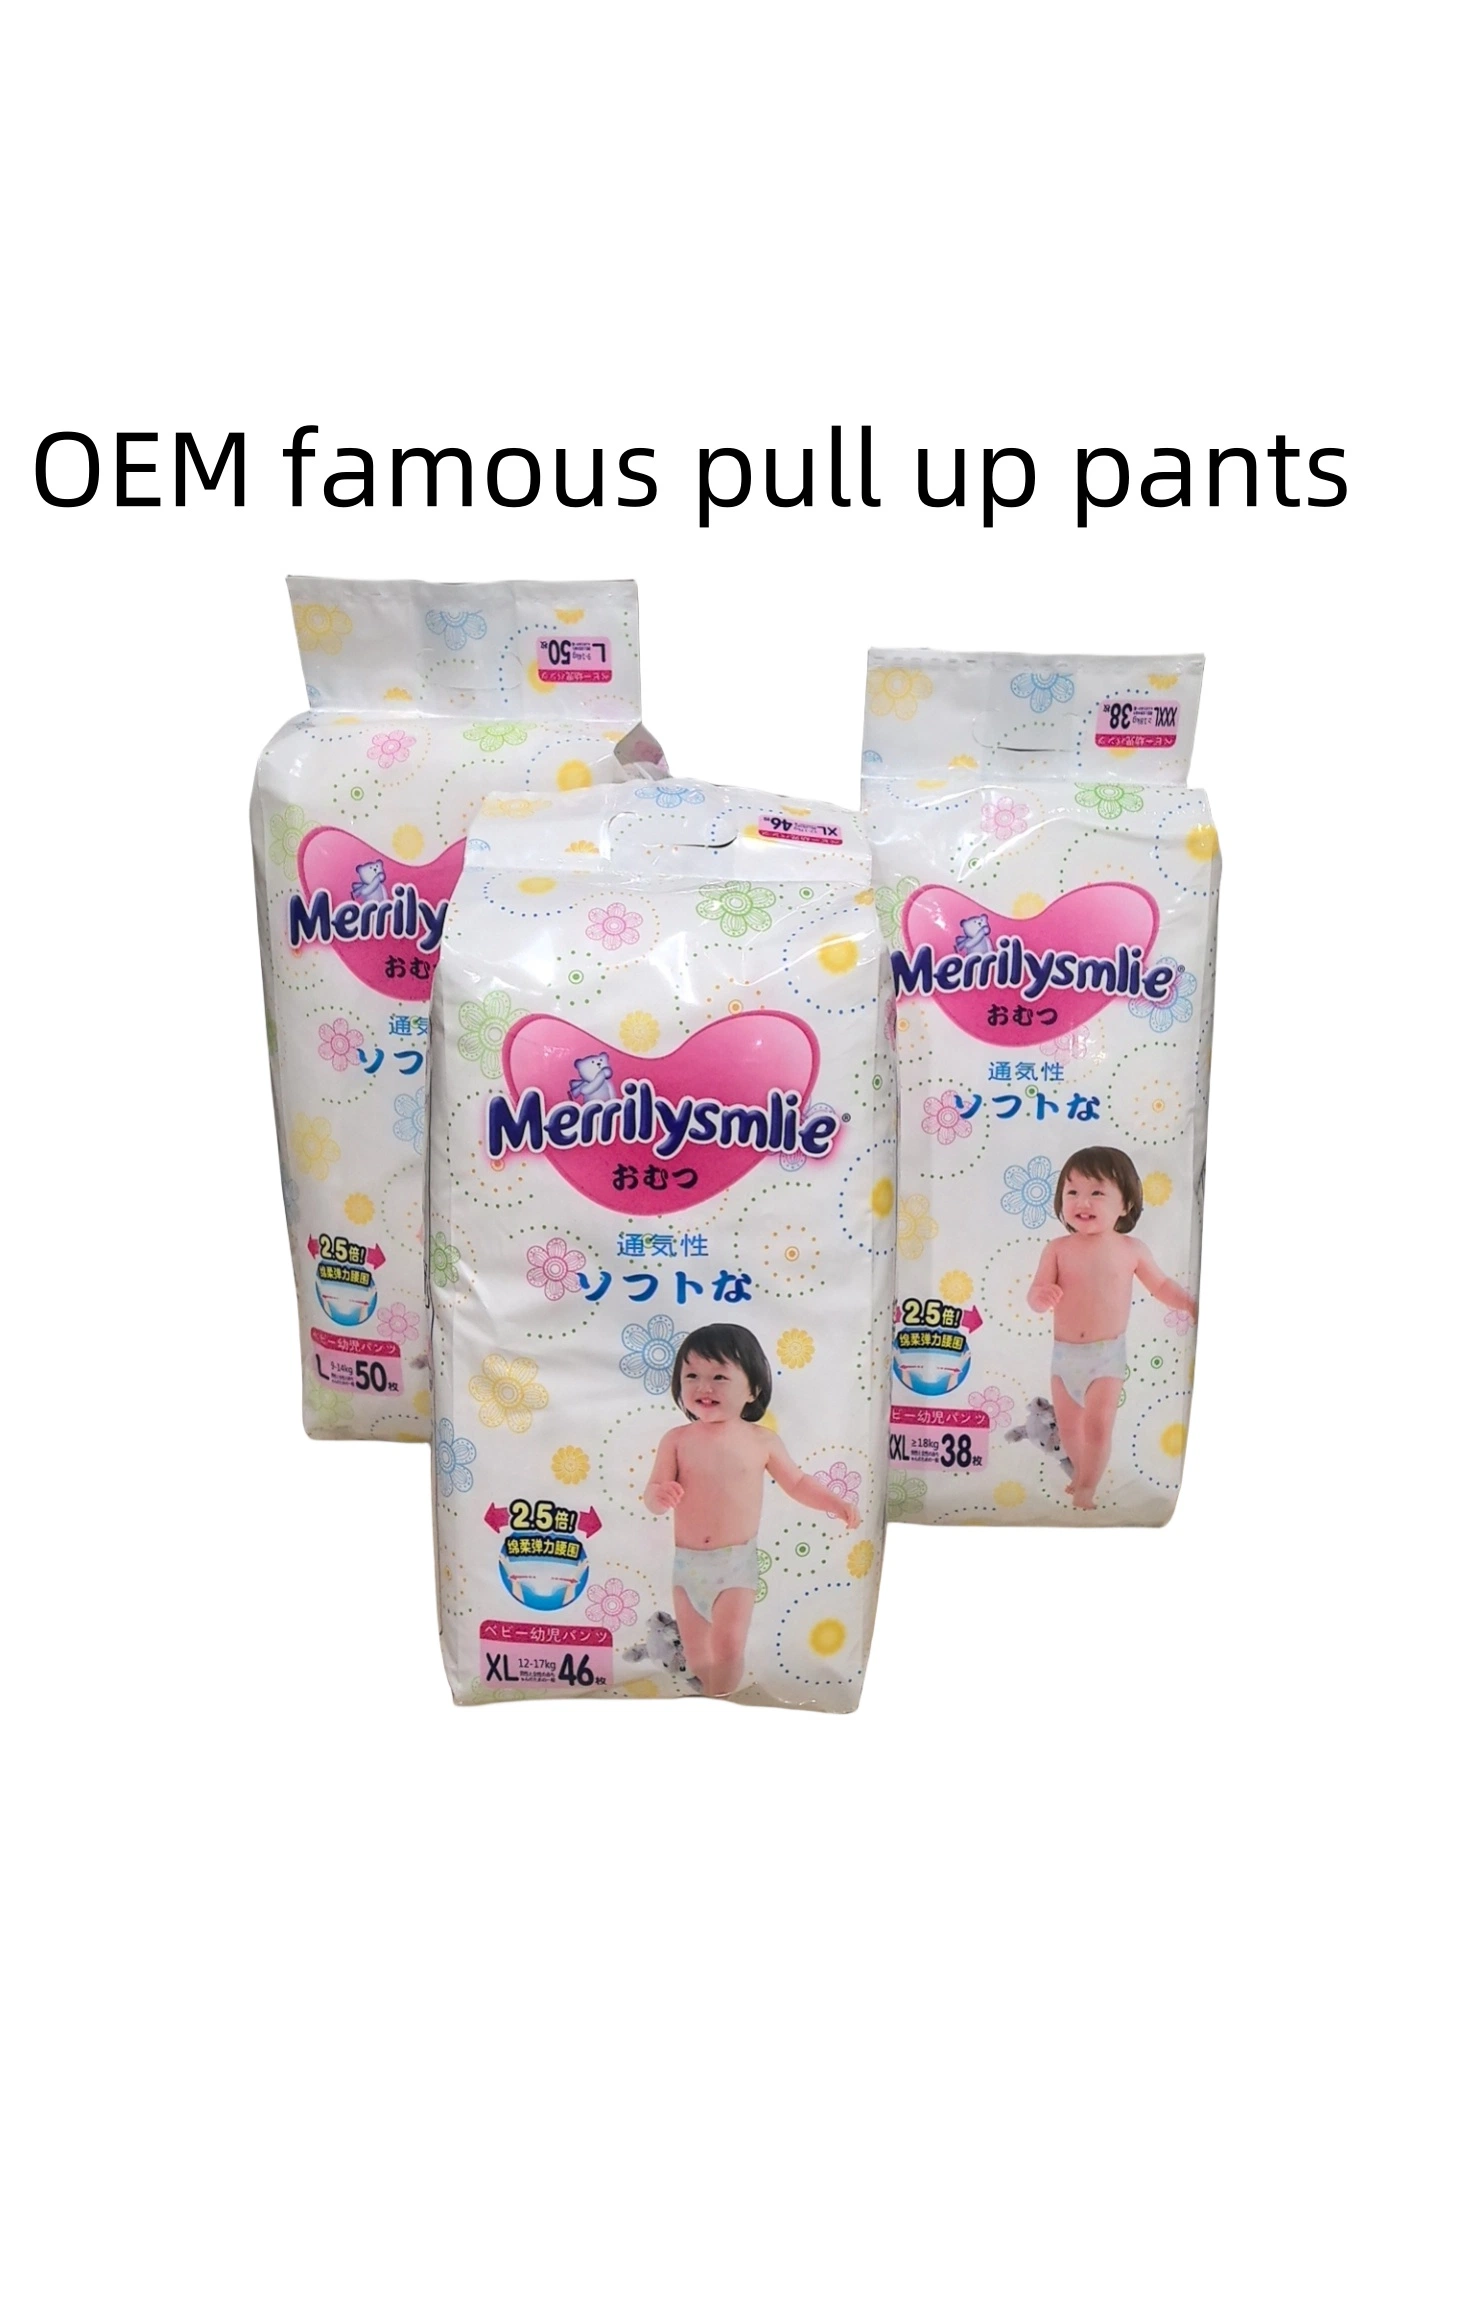 O melhor preço é o Leak Guard impresso para bebé com fraldas de algodão Winshare qualidade de inspeção elevada absorção Disposable famosa Brand Baby Pants Calças de tamanho L.